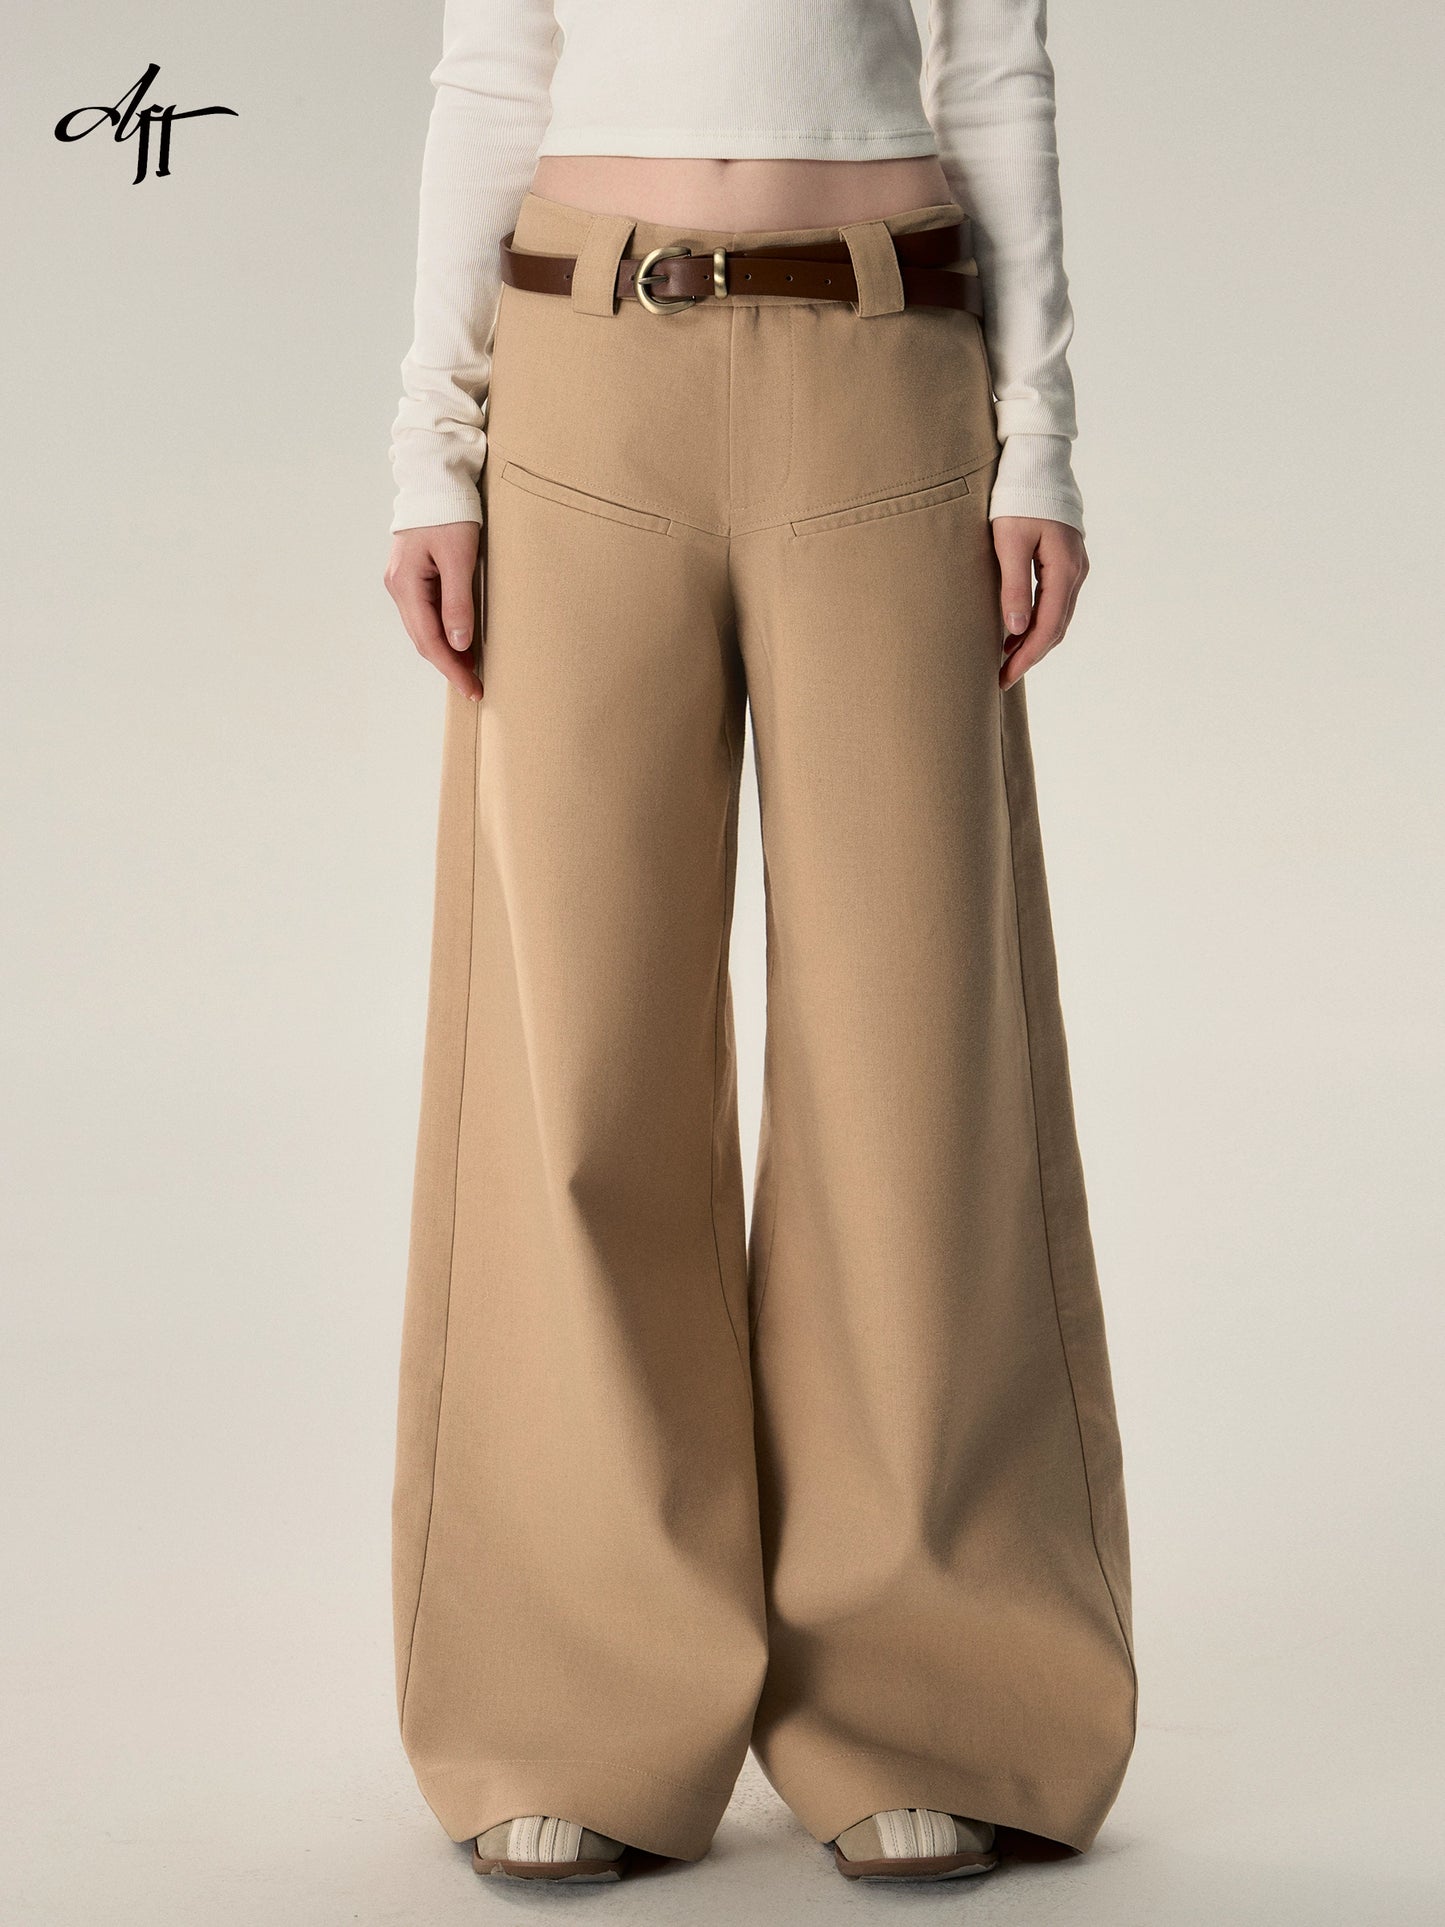 Vintage Loose Wool Low Rise Casual Pants